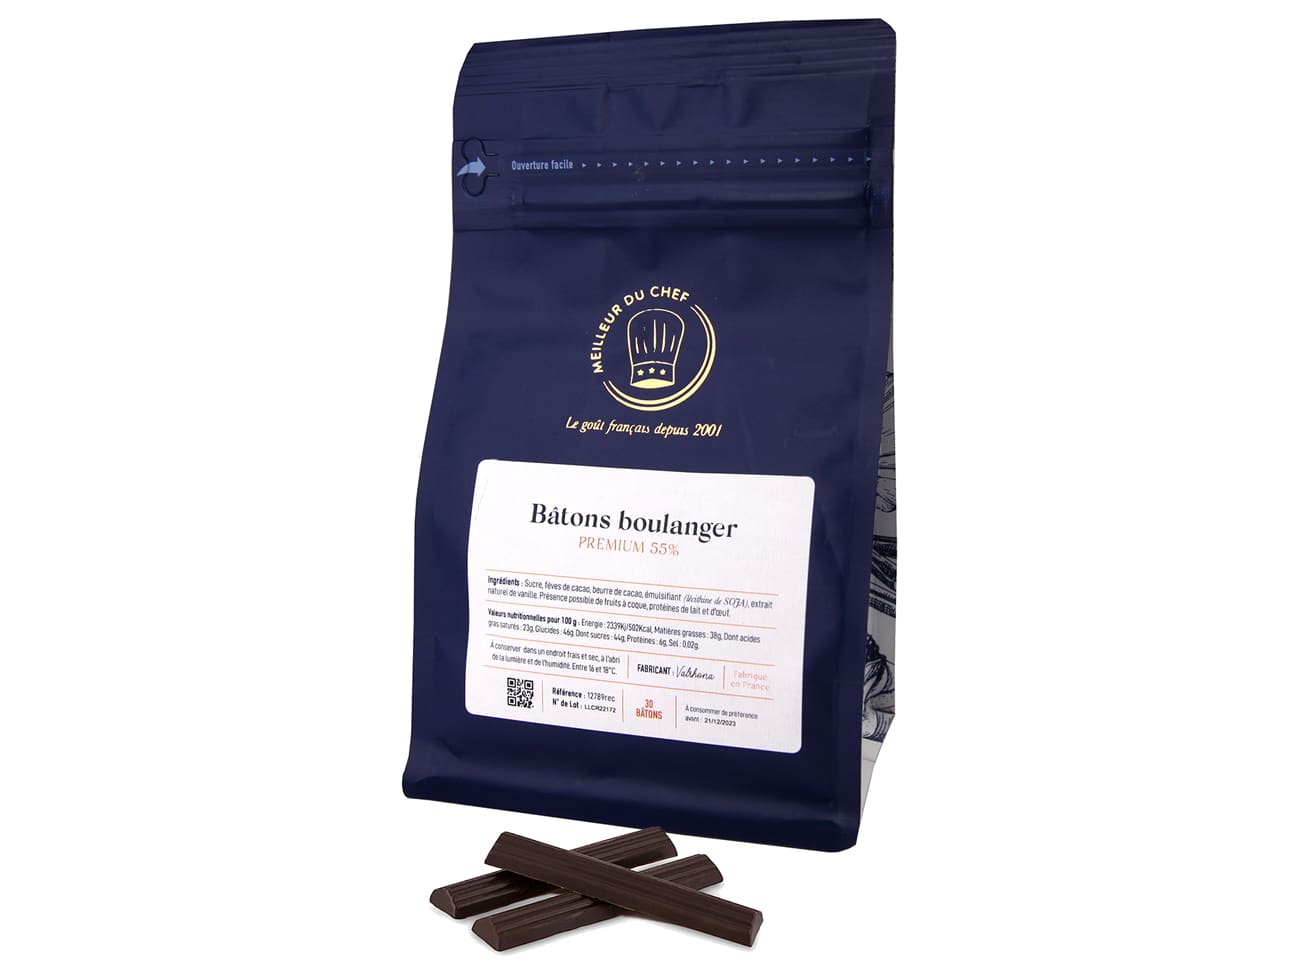 Valrhona - Bâtons de chocolat noir 48% 500 unités de 3,2 g 1,6 kg